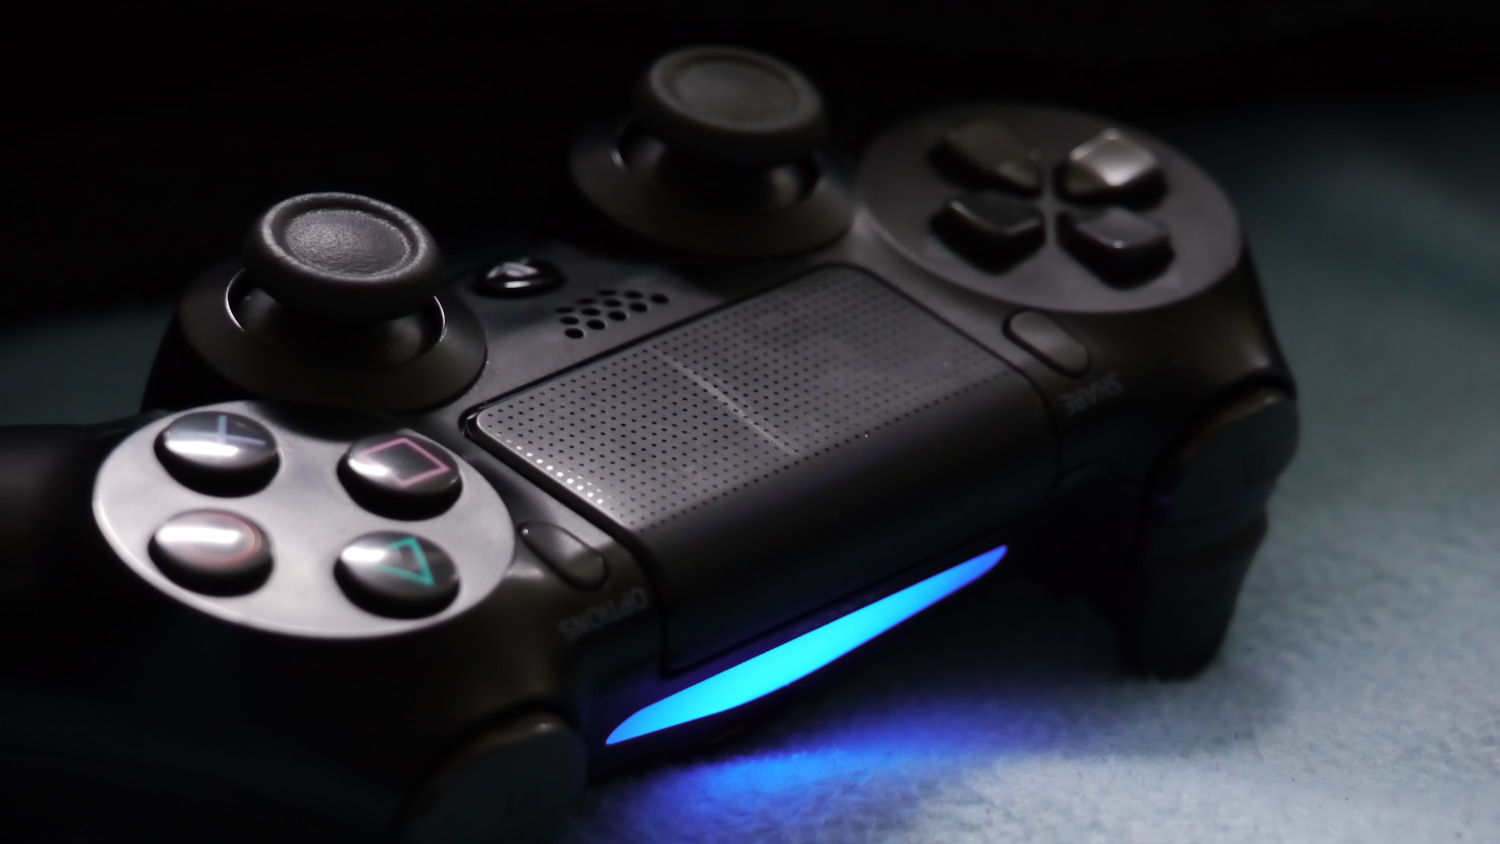 PS Remote Play permite acessar o console e jogar remotamente em